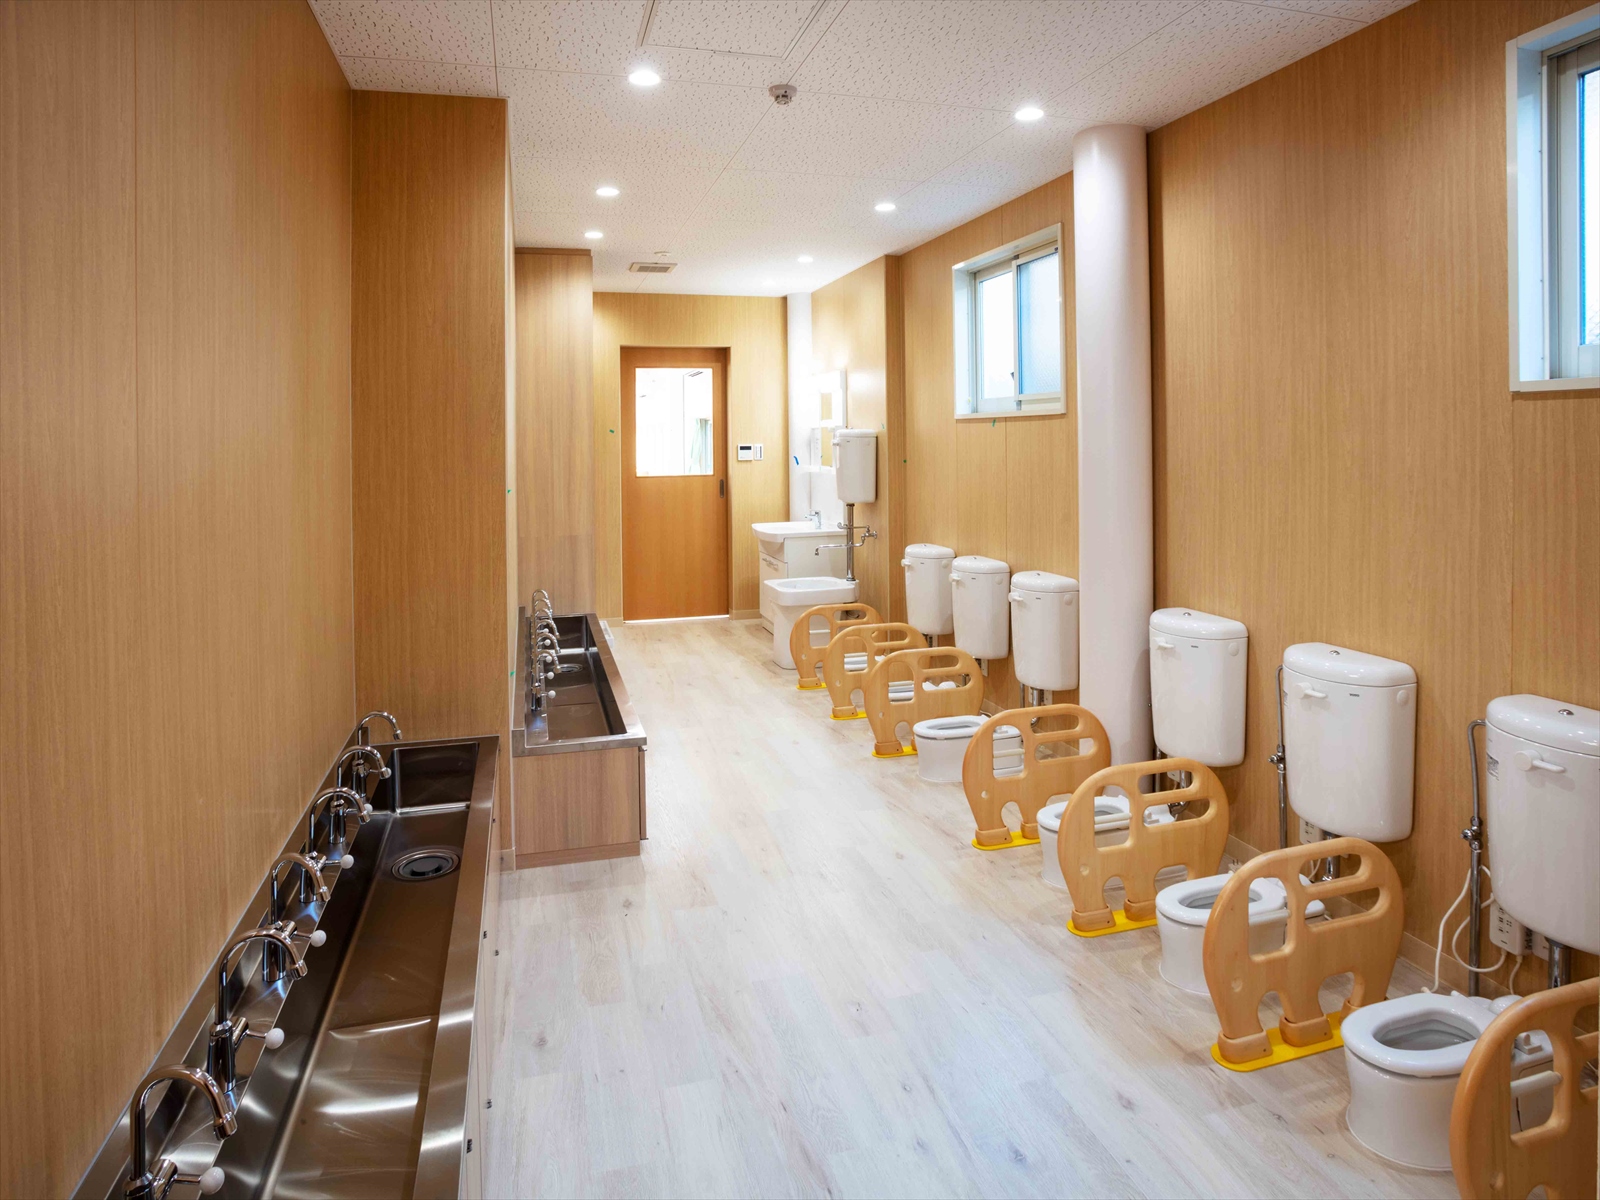 トイレ・手洗い場は、すべて乳幼児用のトイレとなっております。